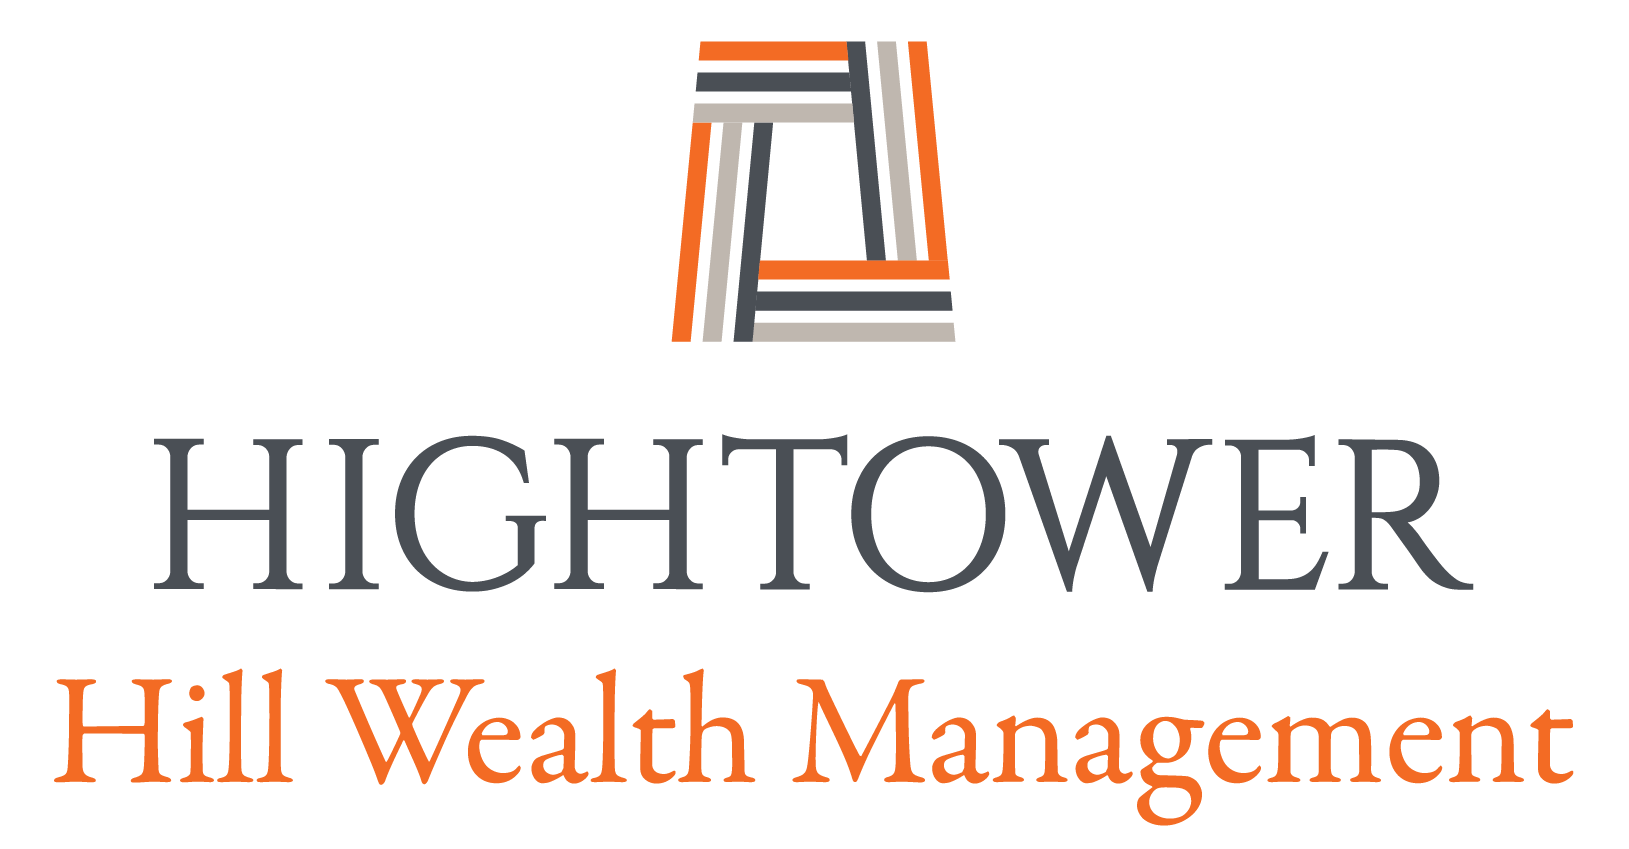 Hightower Hill Wealth Management Logo